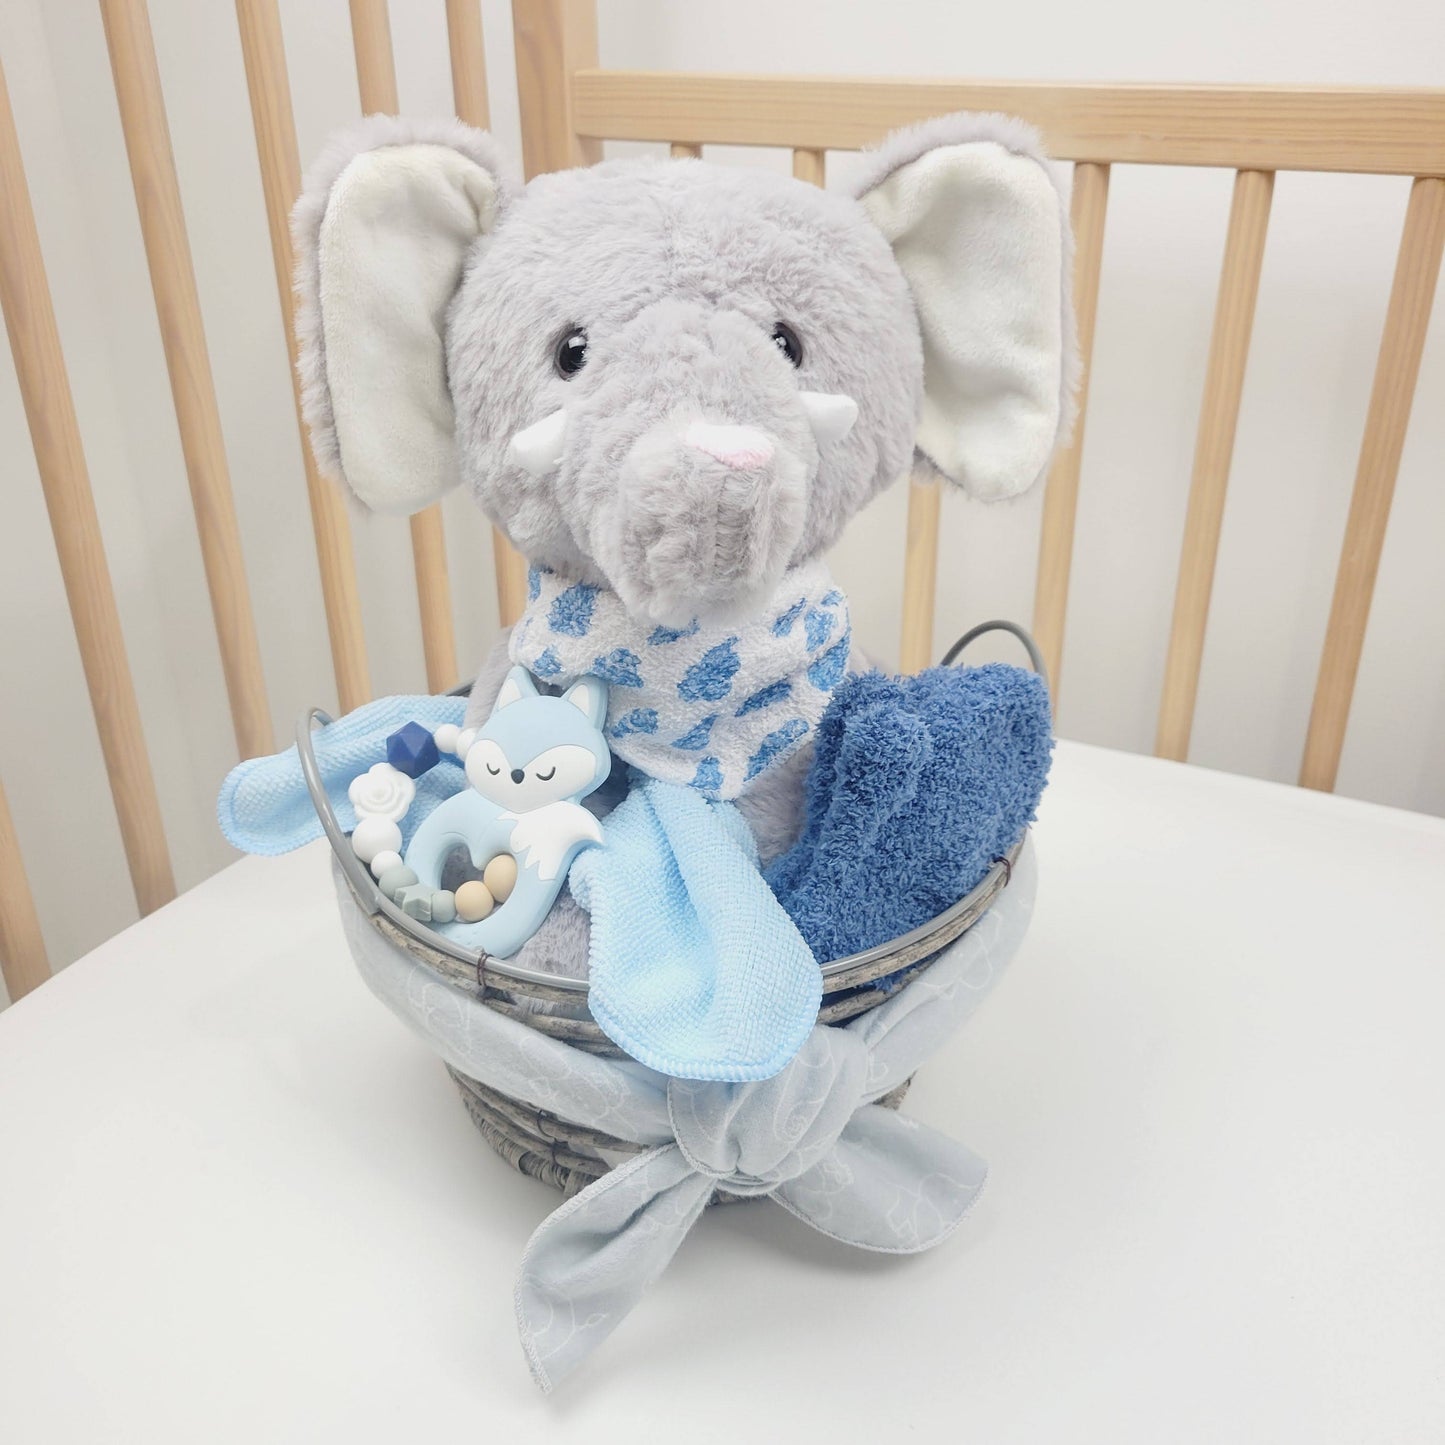 Ensemble cadeau our babyshower dans un panier gris contenant un toutou éléphant gris, des débarbouillettes bleu une doudou grise et un jouet de dentition avec un renard bleu.